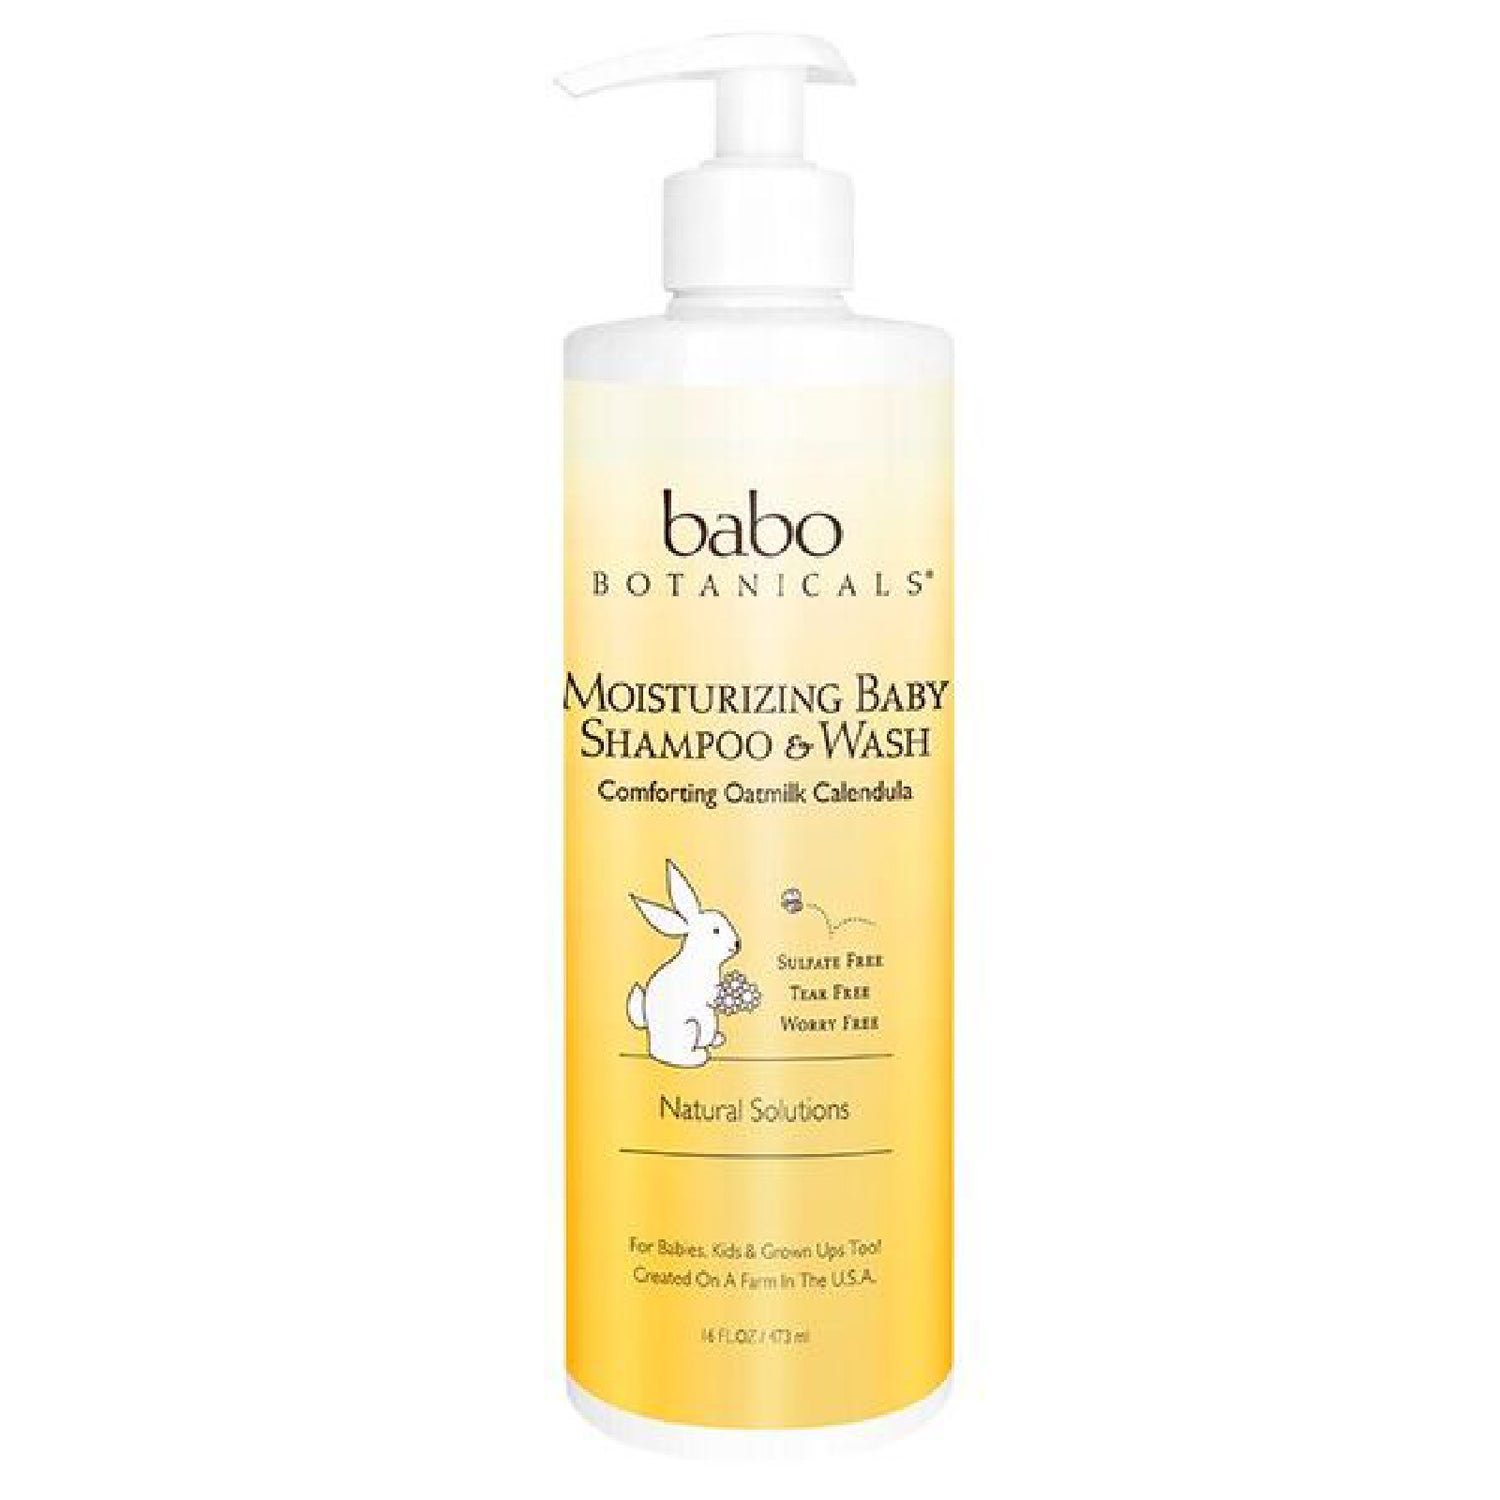 Babo Botanicals Moisturizing Baby Shampoo & Wash (Family Size)